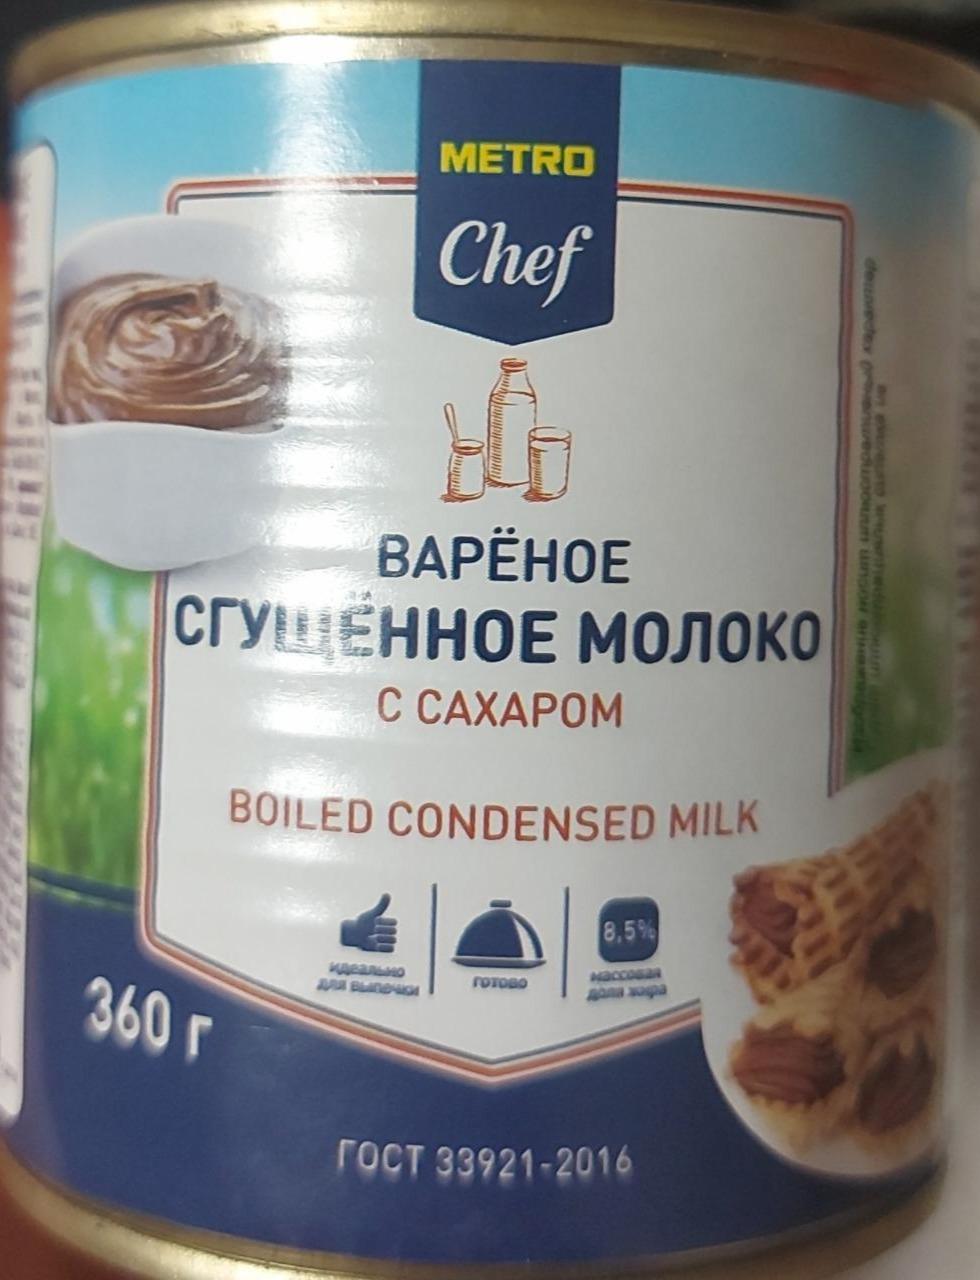 Фото - Сгущенное вареное молоко цельное с сахаром 8.5% Metro Chef